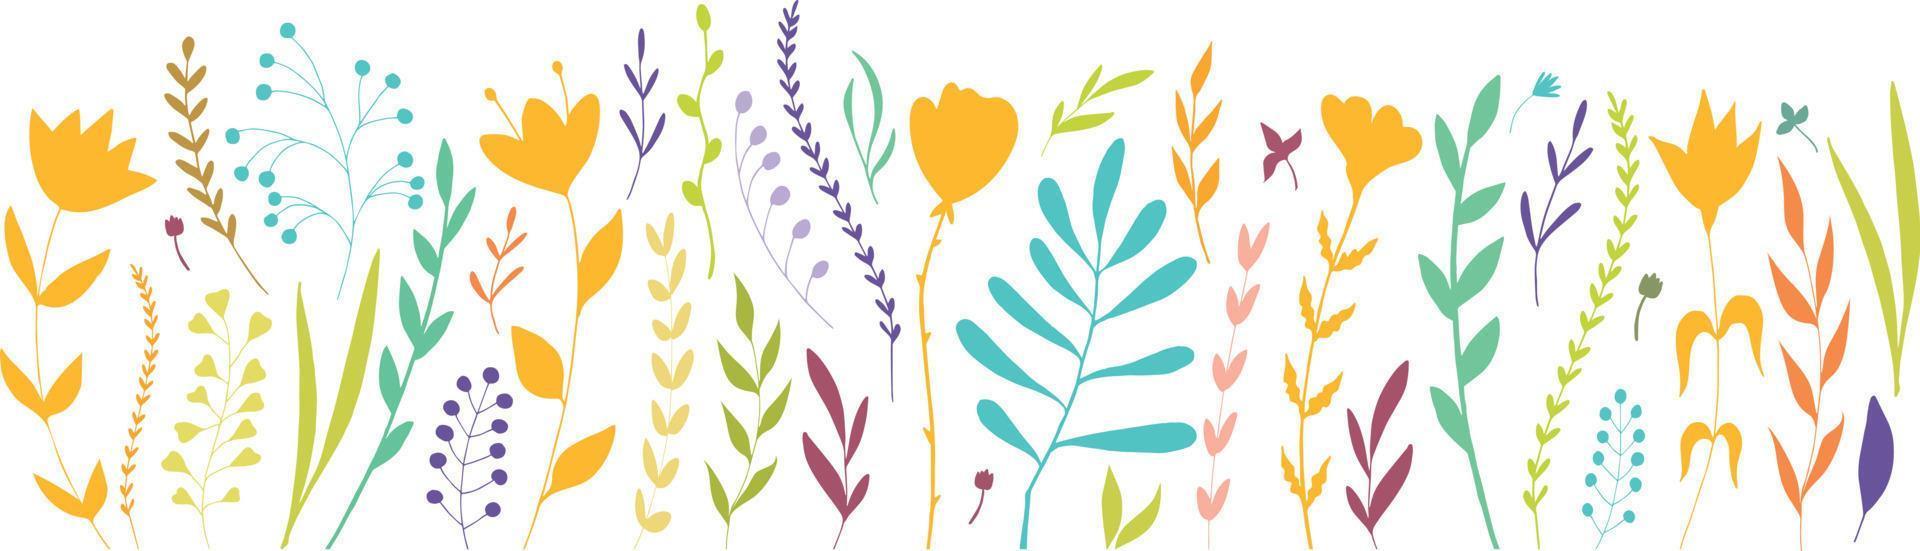 Blumen- Hintergrund mit verschiedene Hand gezeichnet Blumen im hell Farben. botanisch Elemente. Blume Bett. Blumen- Sammlung vektor